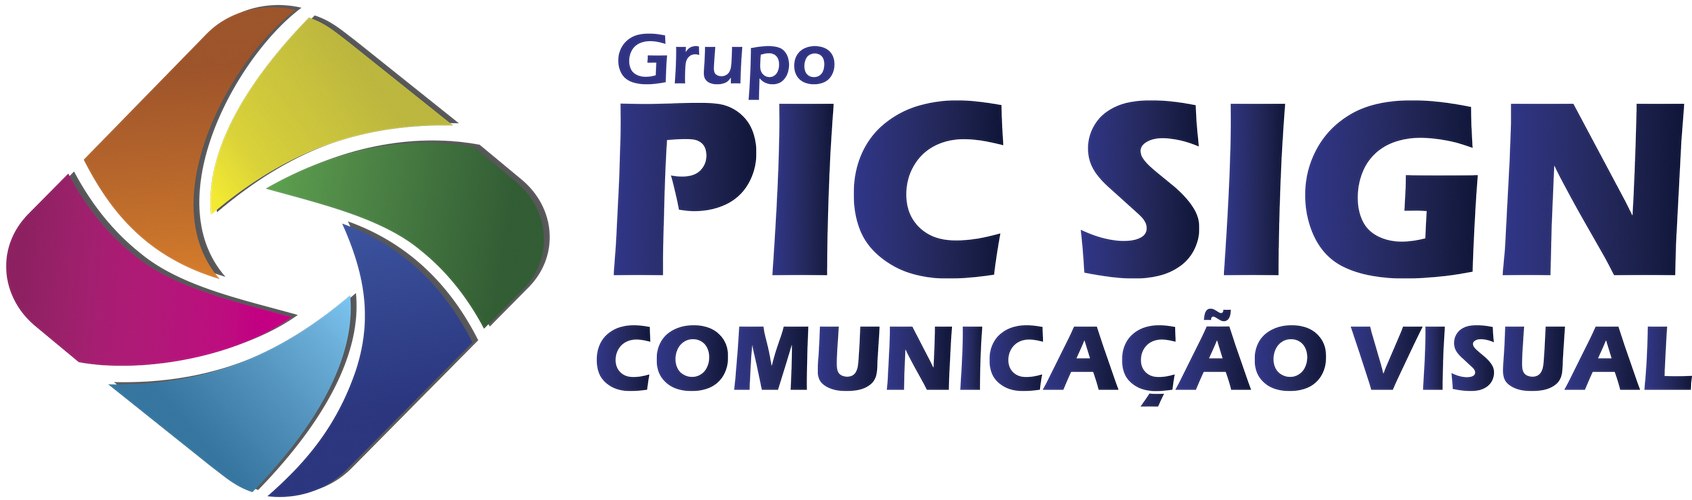 Impressão Digital em Tecido Ibirapuera - Impressão Digital Adesivo Vinil - Pic Sign Comunicação Visual